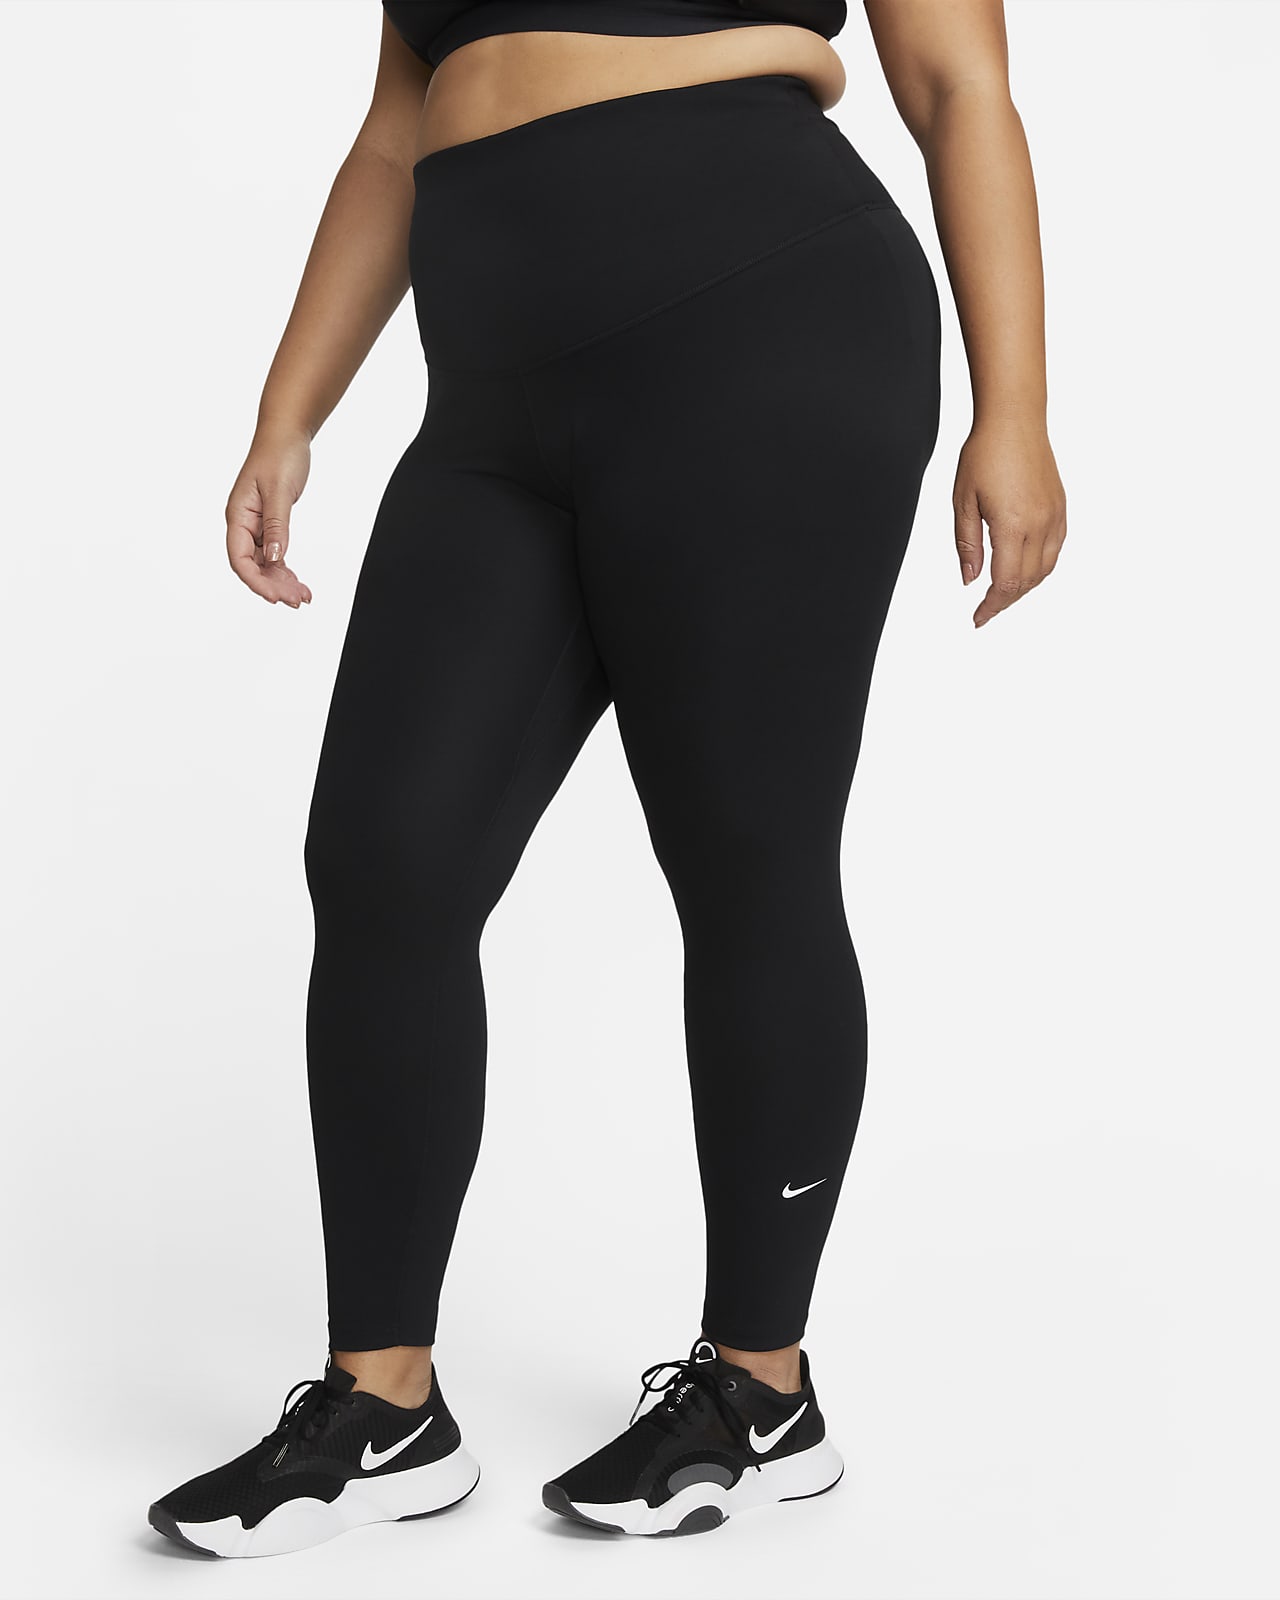 Nike One Women's High-Rise Leggings (Plus Size). Nike ZA